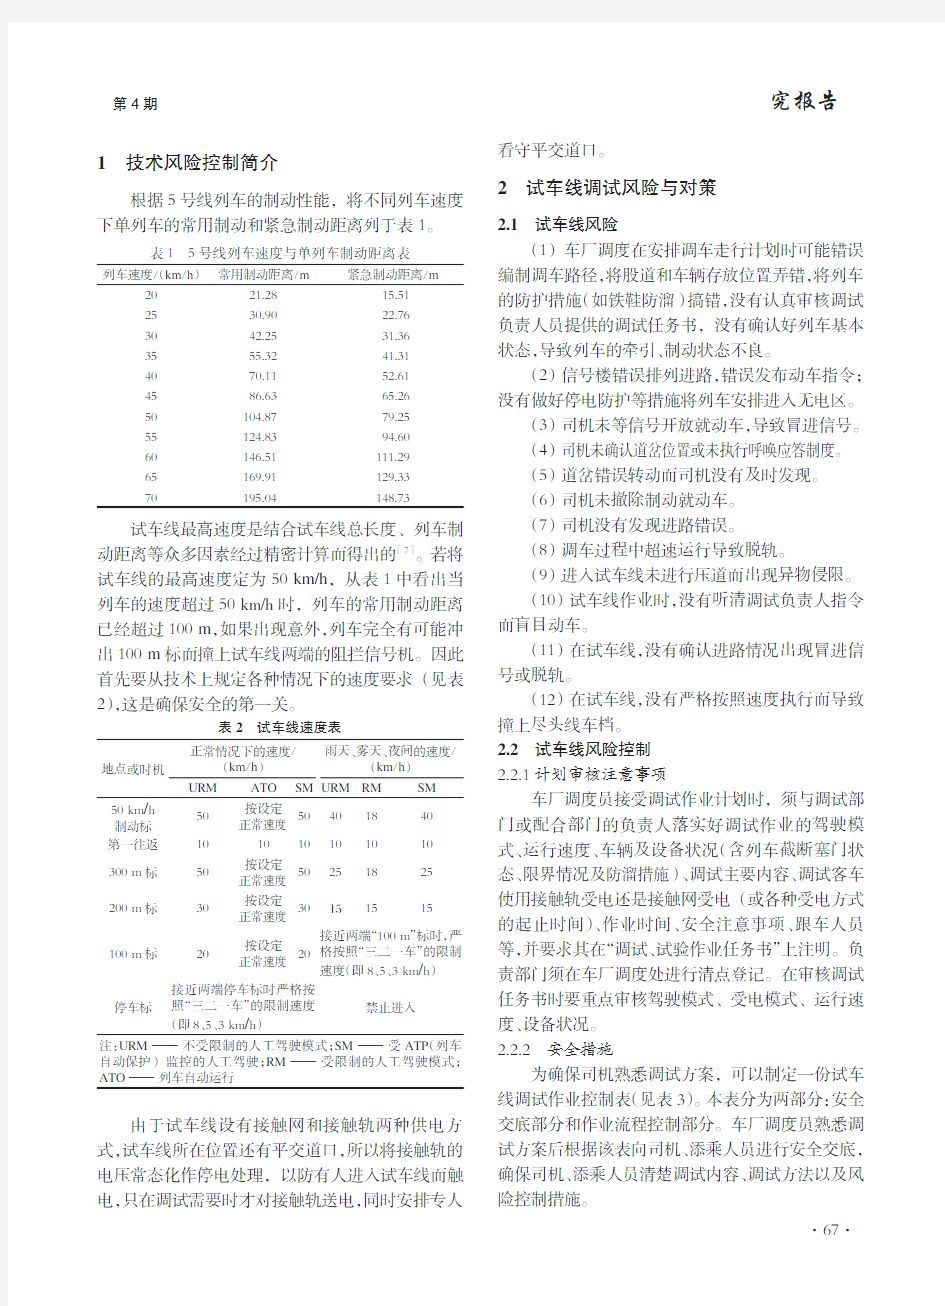 广州地铁鱼珠车辆段试车线作业安全风险及控制措施分析